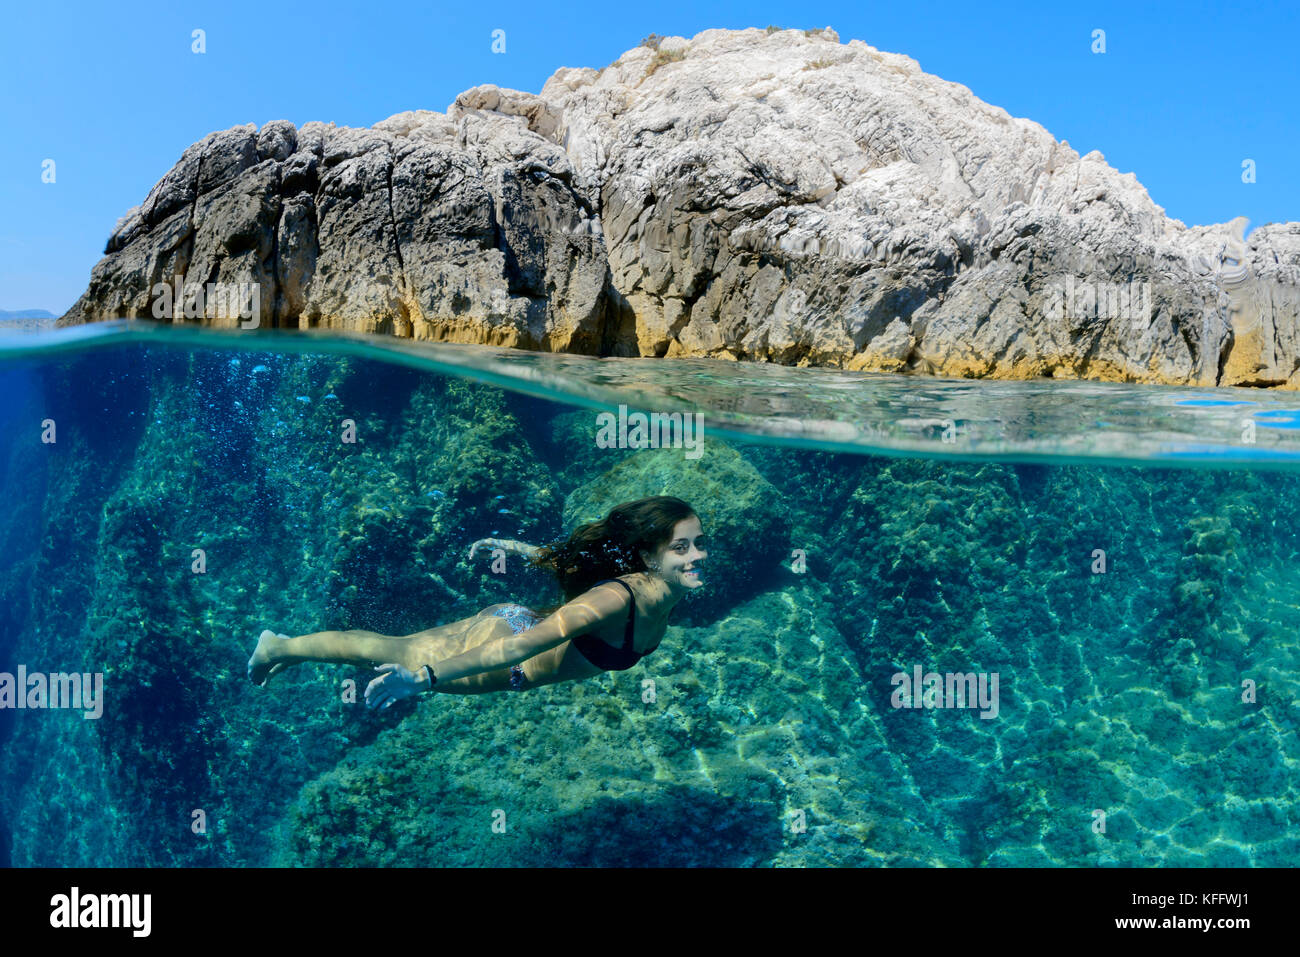 Splitlevel Picture, Girl swimming or diving underwaterin the sea, Adriatic Sea, Mediterranean Sea, Dalmatia, Croatia, MR Yes Stock Photo